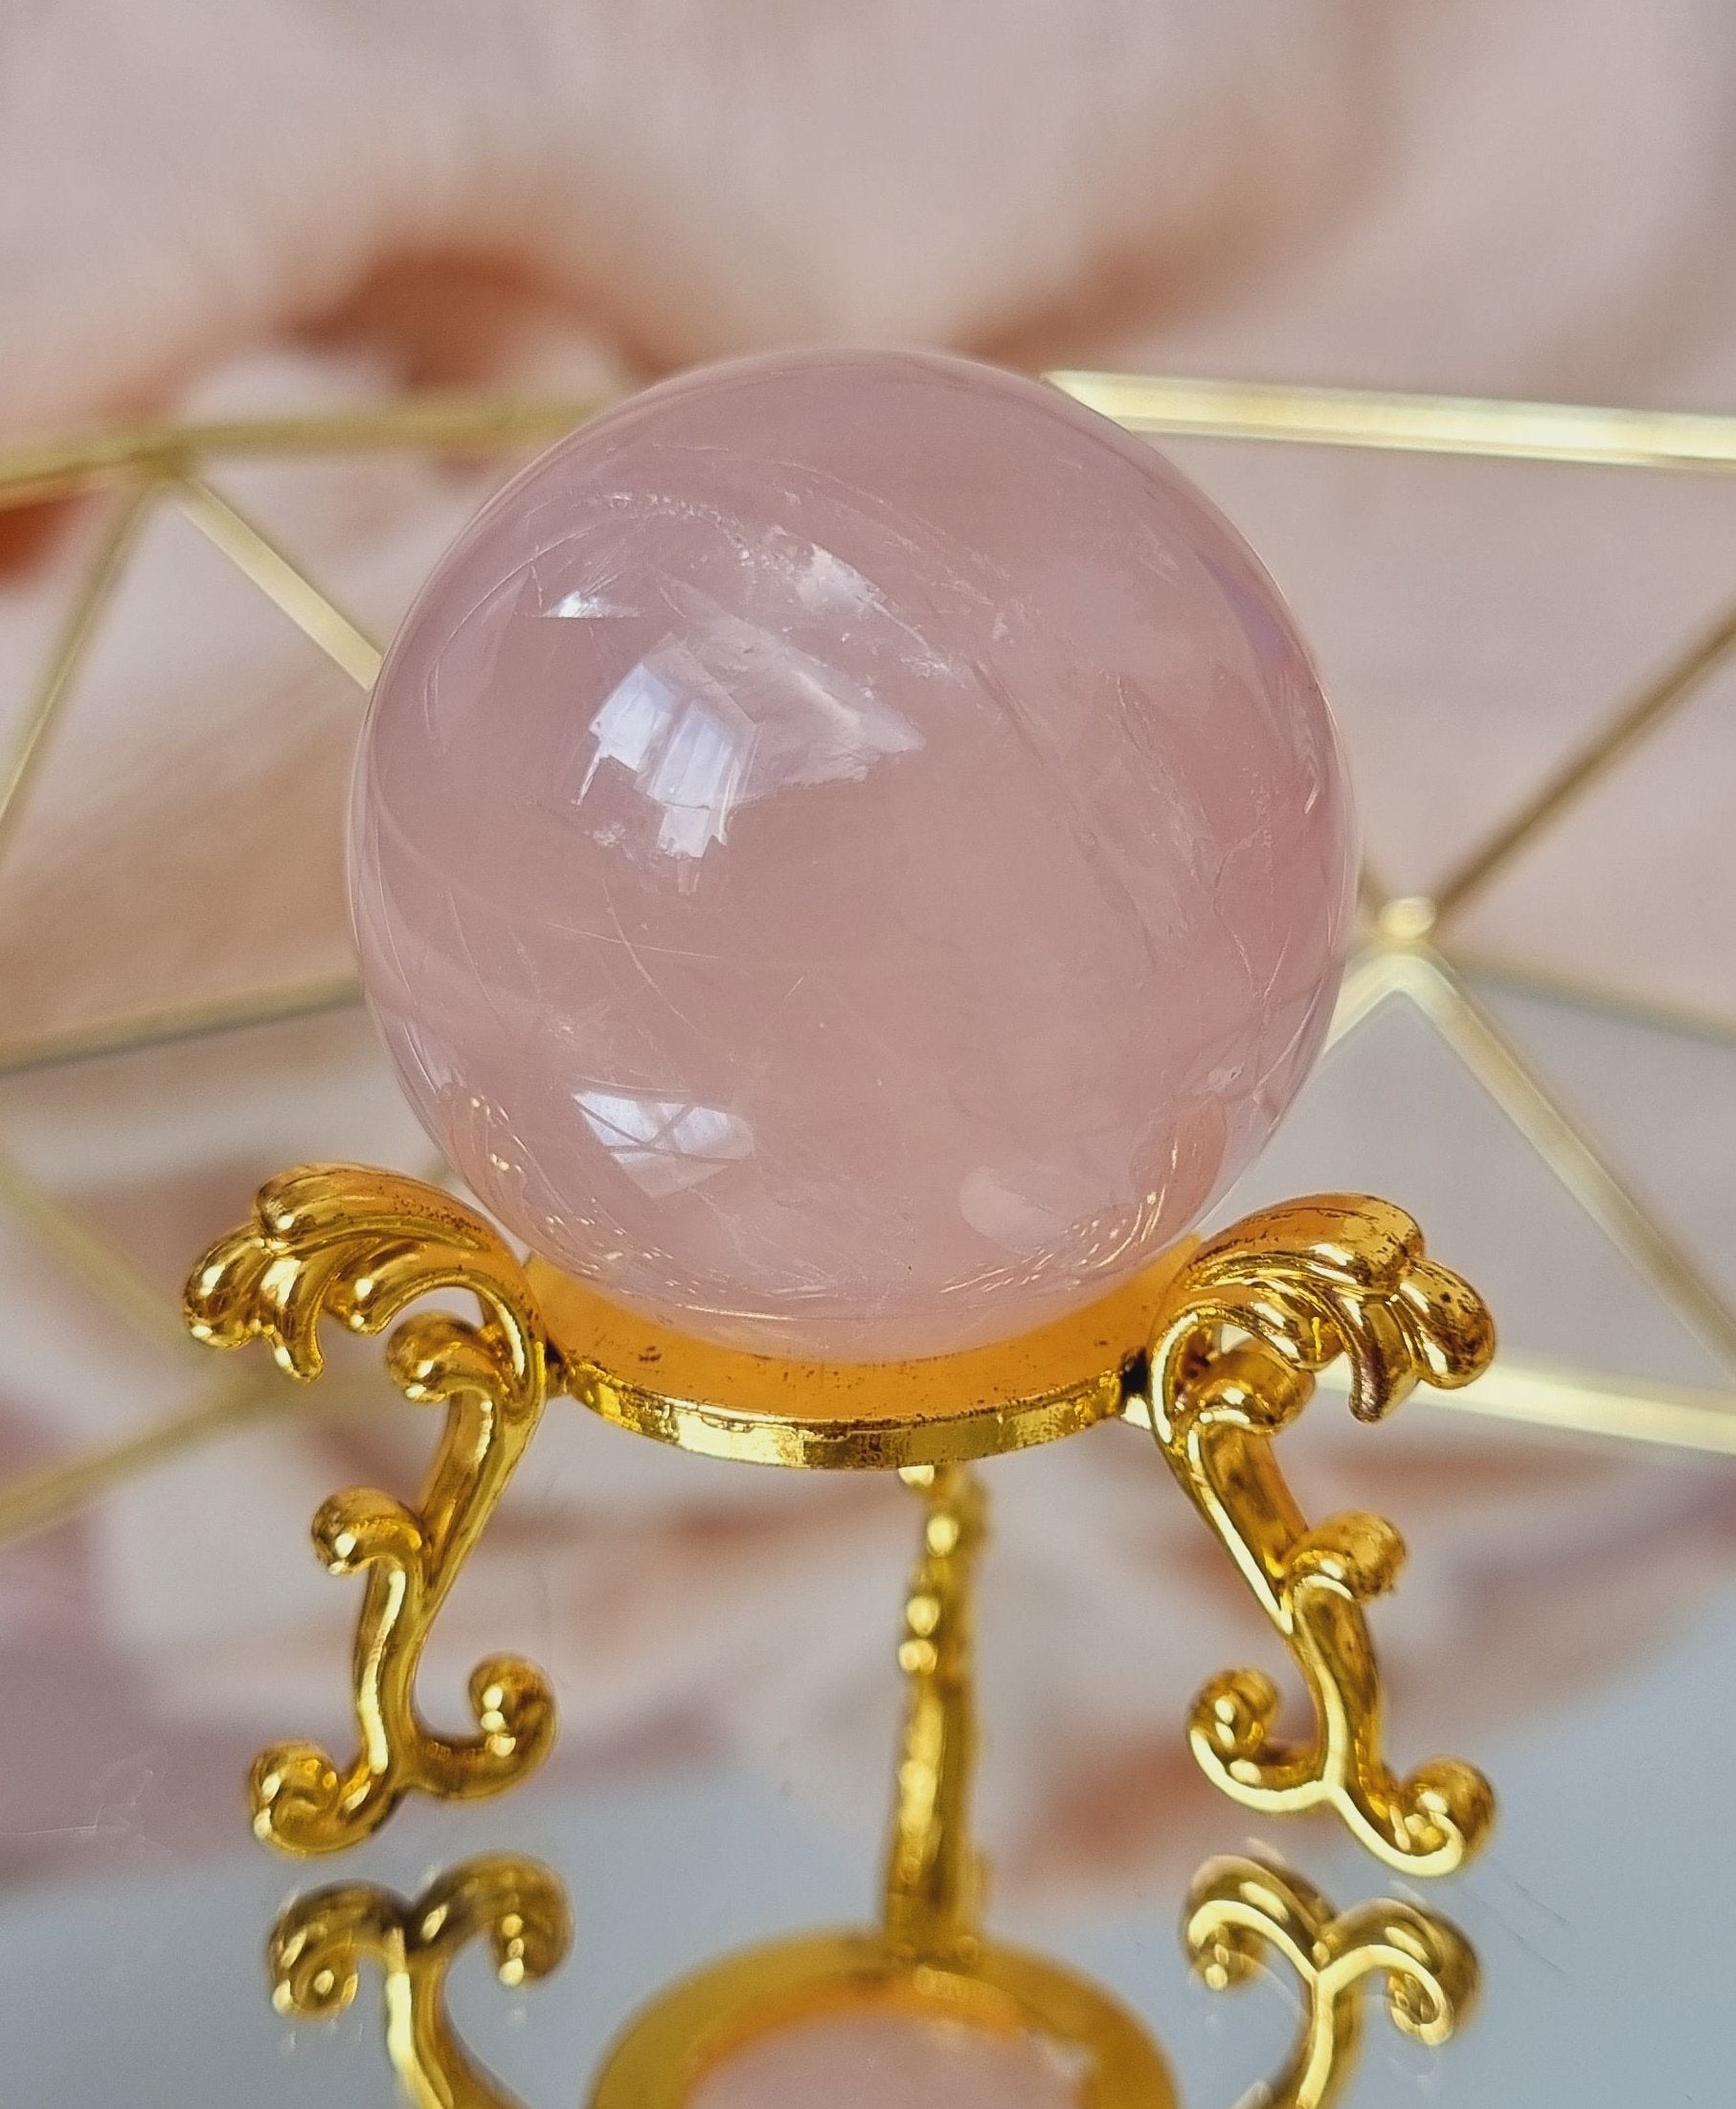 star rose quartz sphere